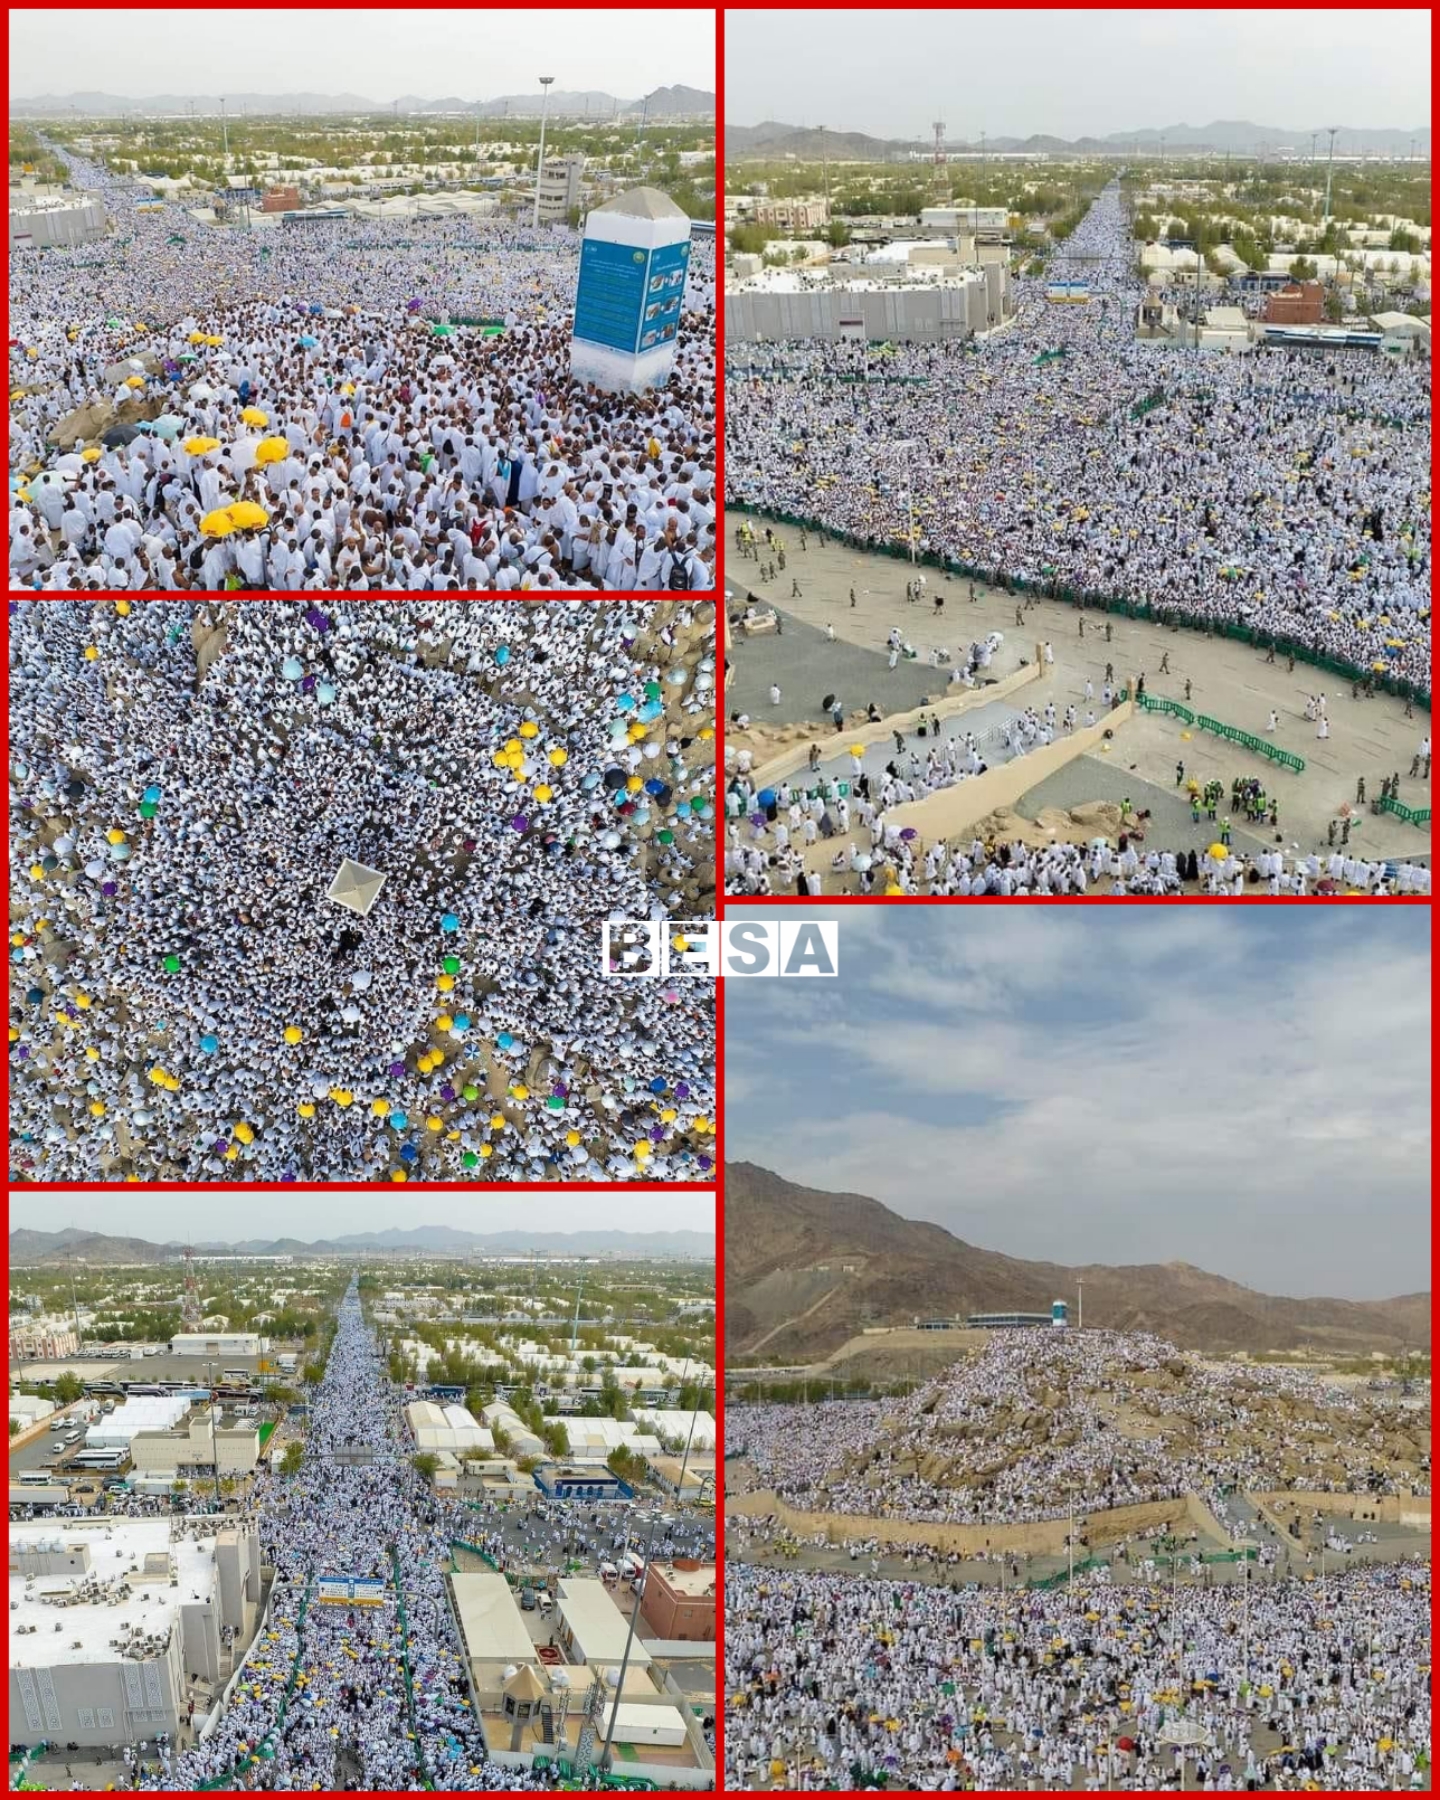 Miliona Haxhi nga e gjithë bota mblidhen në Malin e Arafatit sot